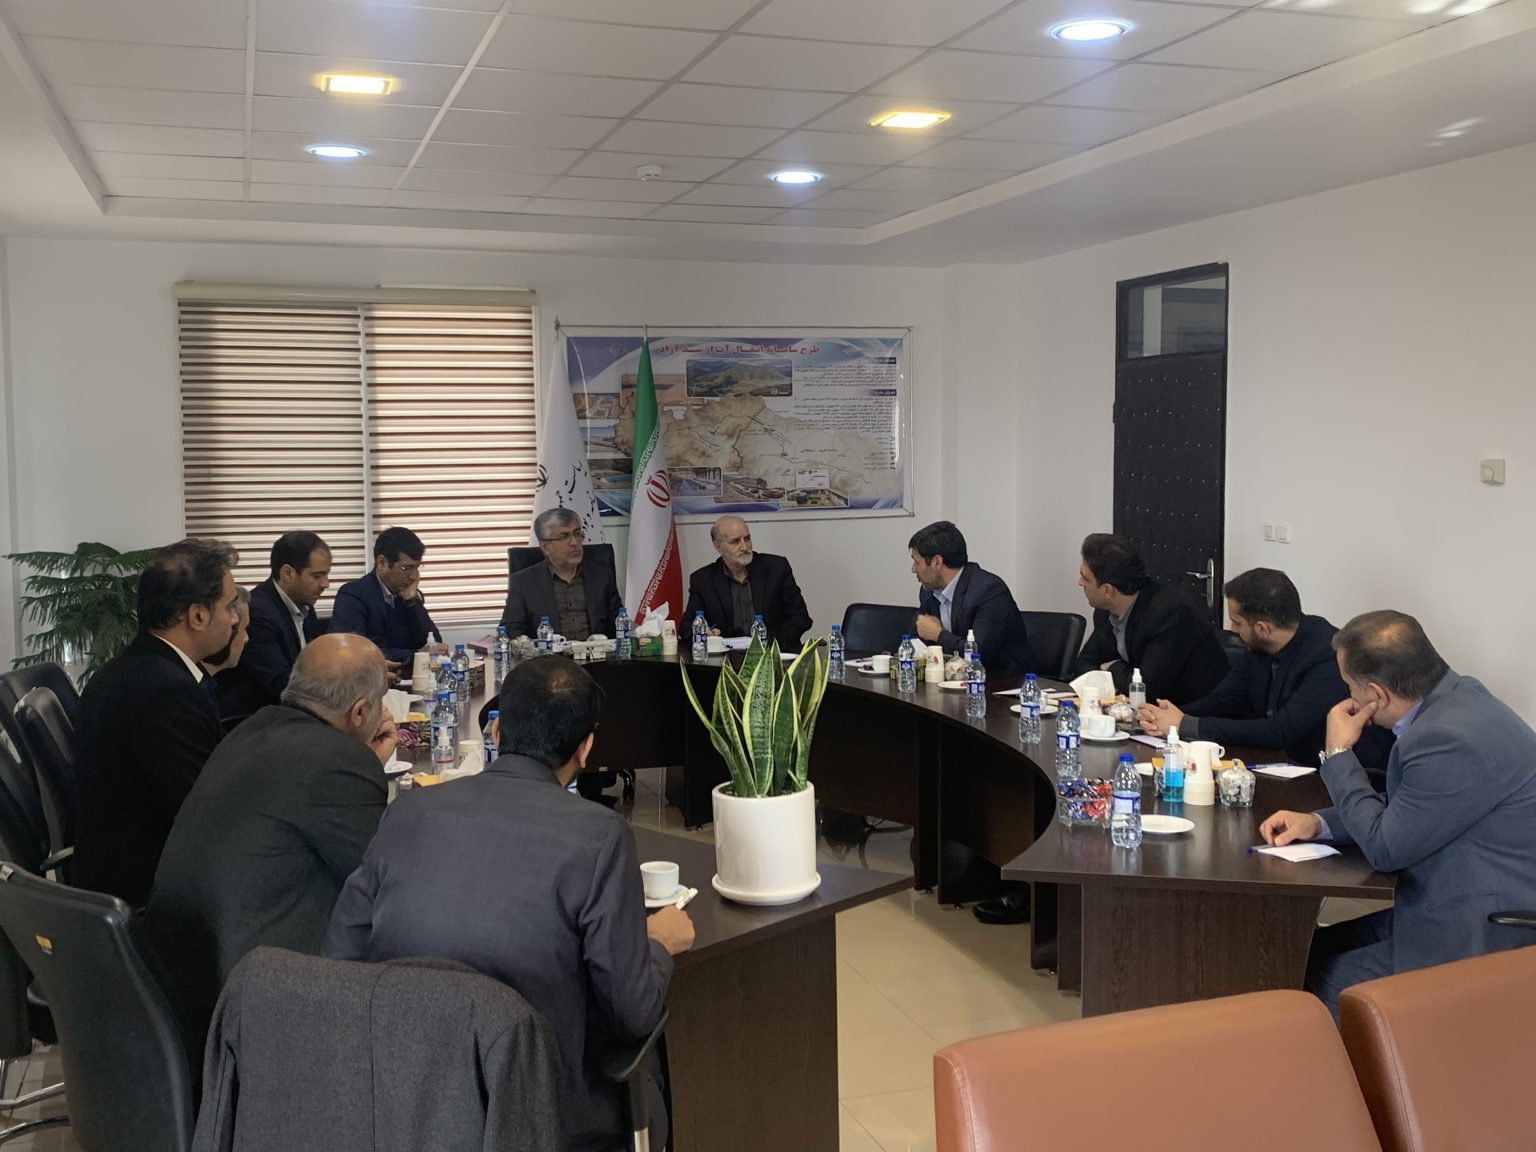 جلسه کمیته پشتیبانی جشنواره فجر تا فجر استان کردستان برگزار گردید